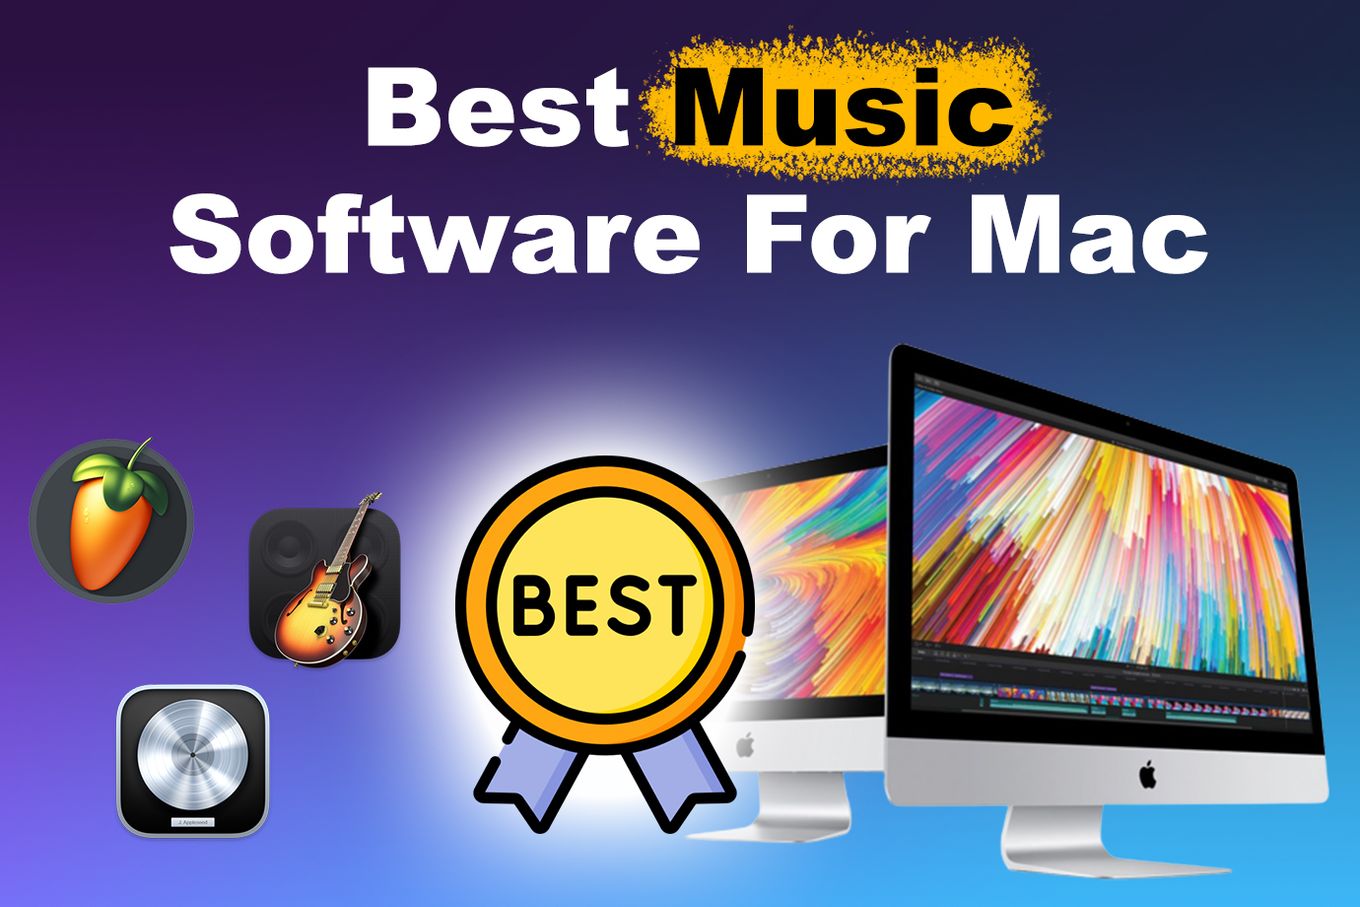 best mac music software download torrent websites